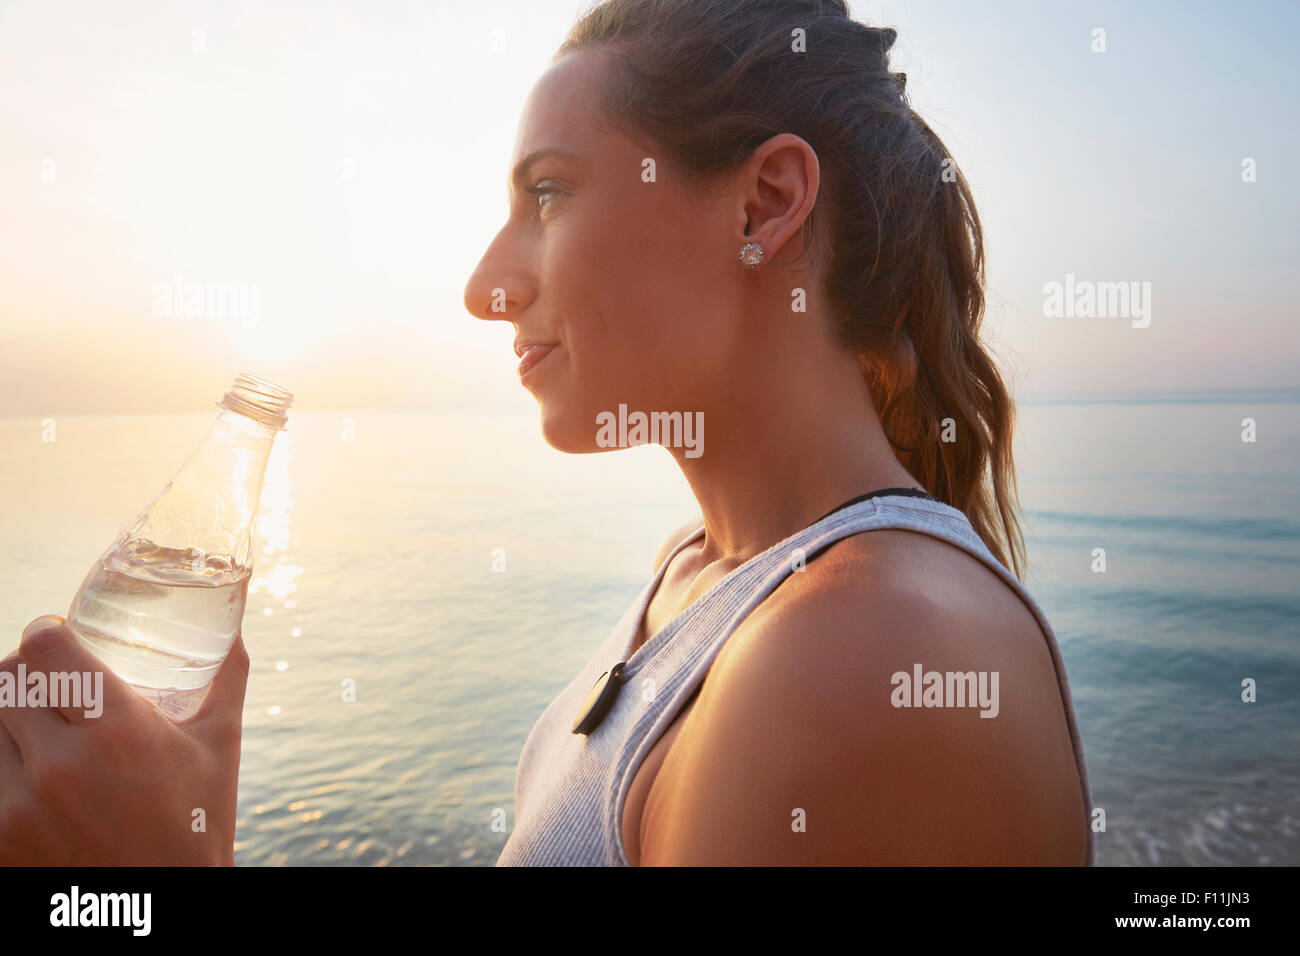 Athlete drinking water bottle on beach Stock Photo